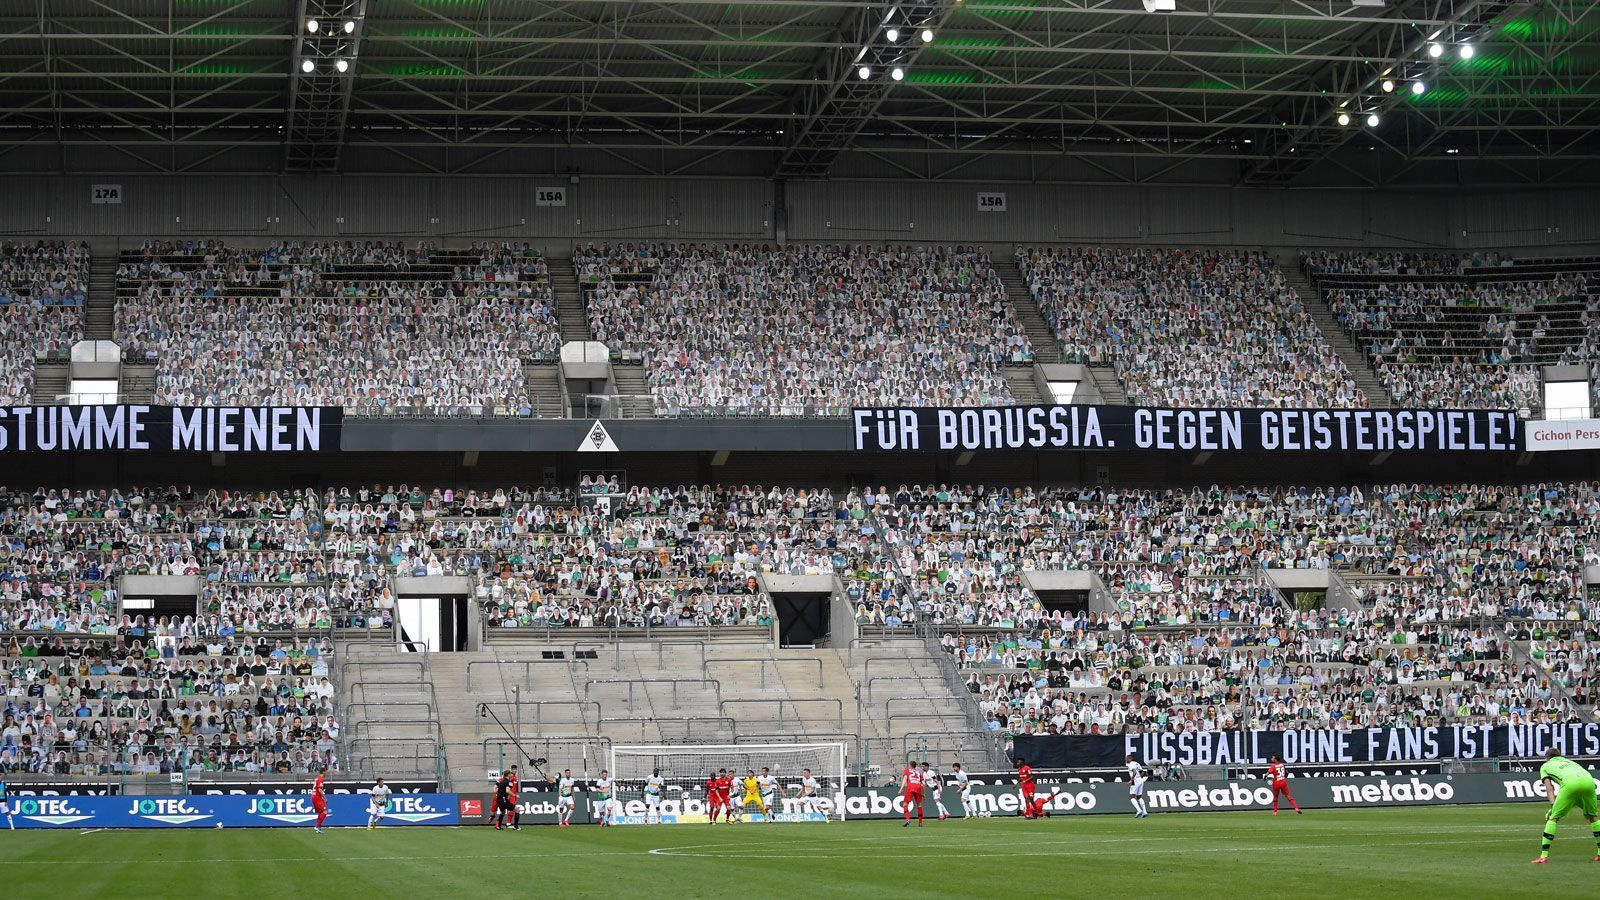 
                <strong>Borussia Mönchengladbach</strong><br>
                Stadion: Borussia-ParkKapazität: 54.002Vorgehen: 30.000 verkaufte Dauerkarten, diese gelten aktuell nur für die Rückrunde und kosten damit nur den halben Preis
              